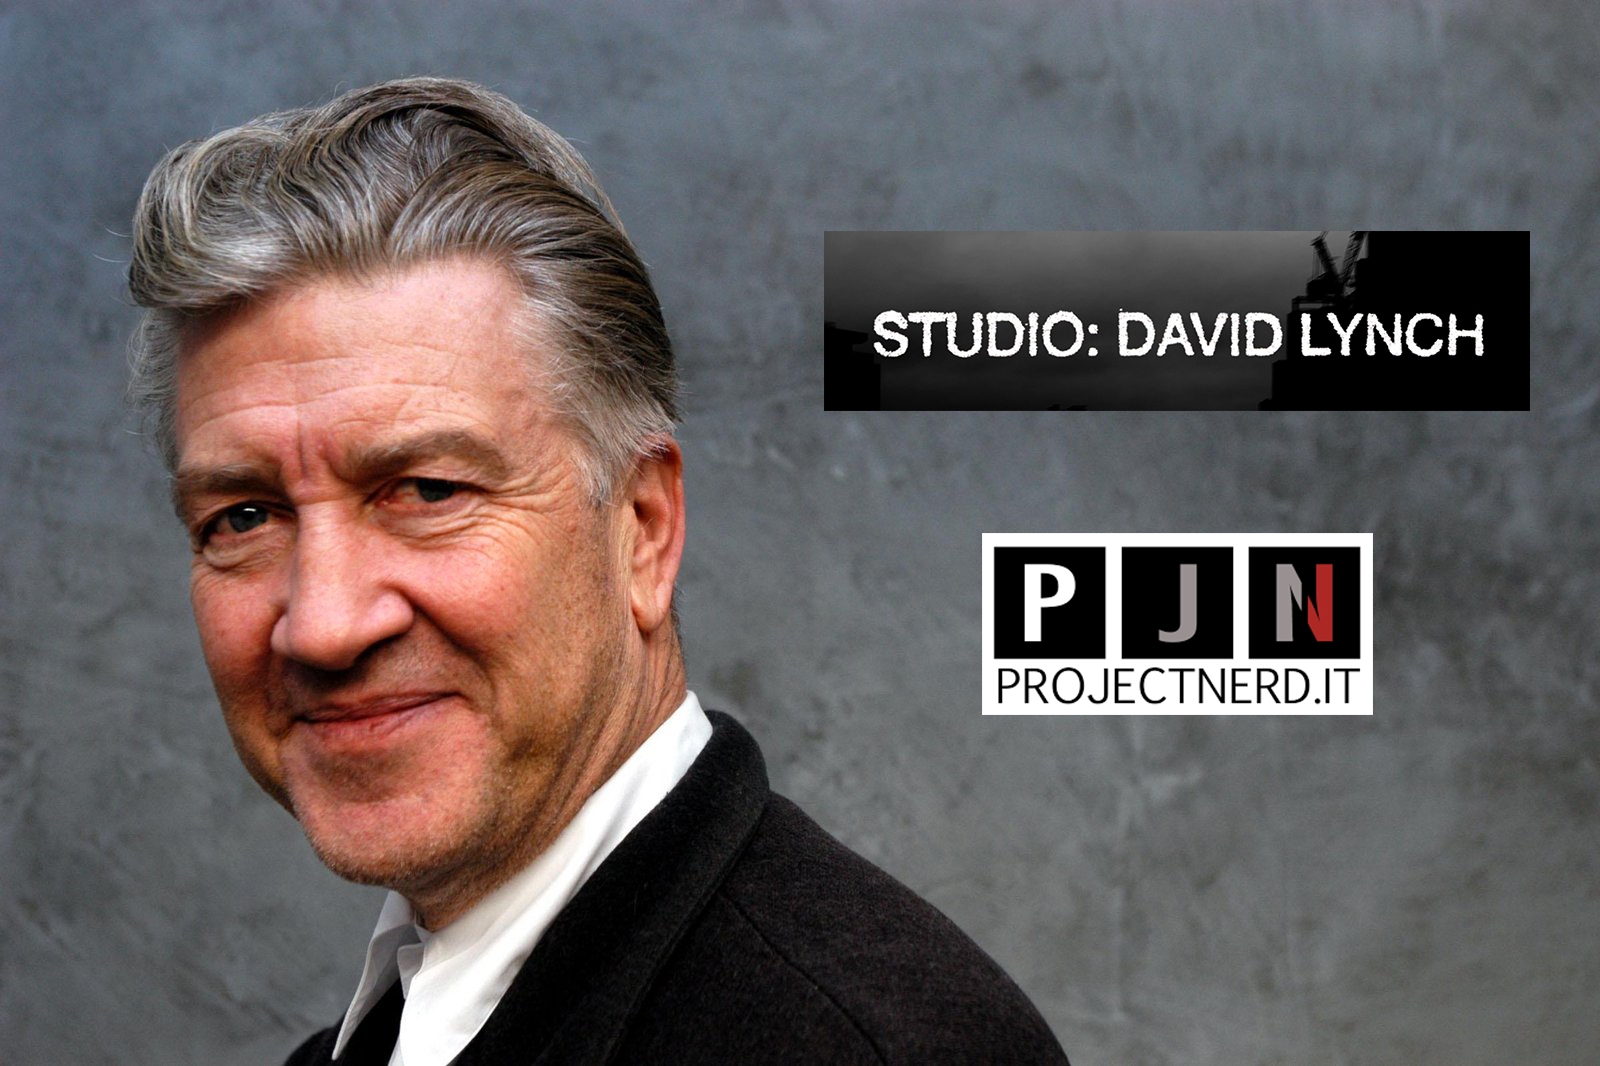 David Lynch projectnerd.it